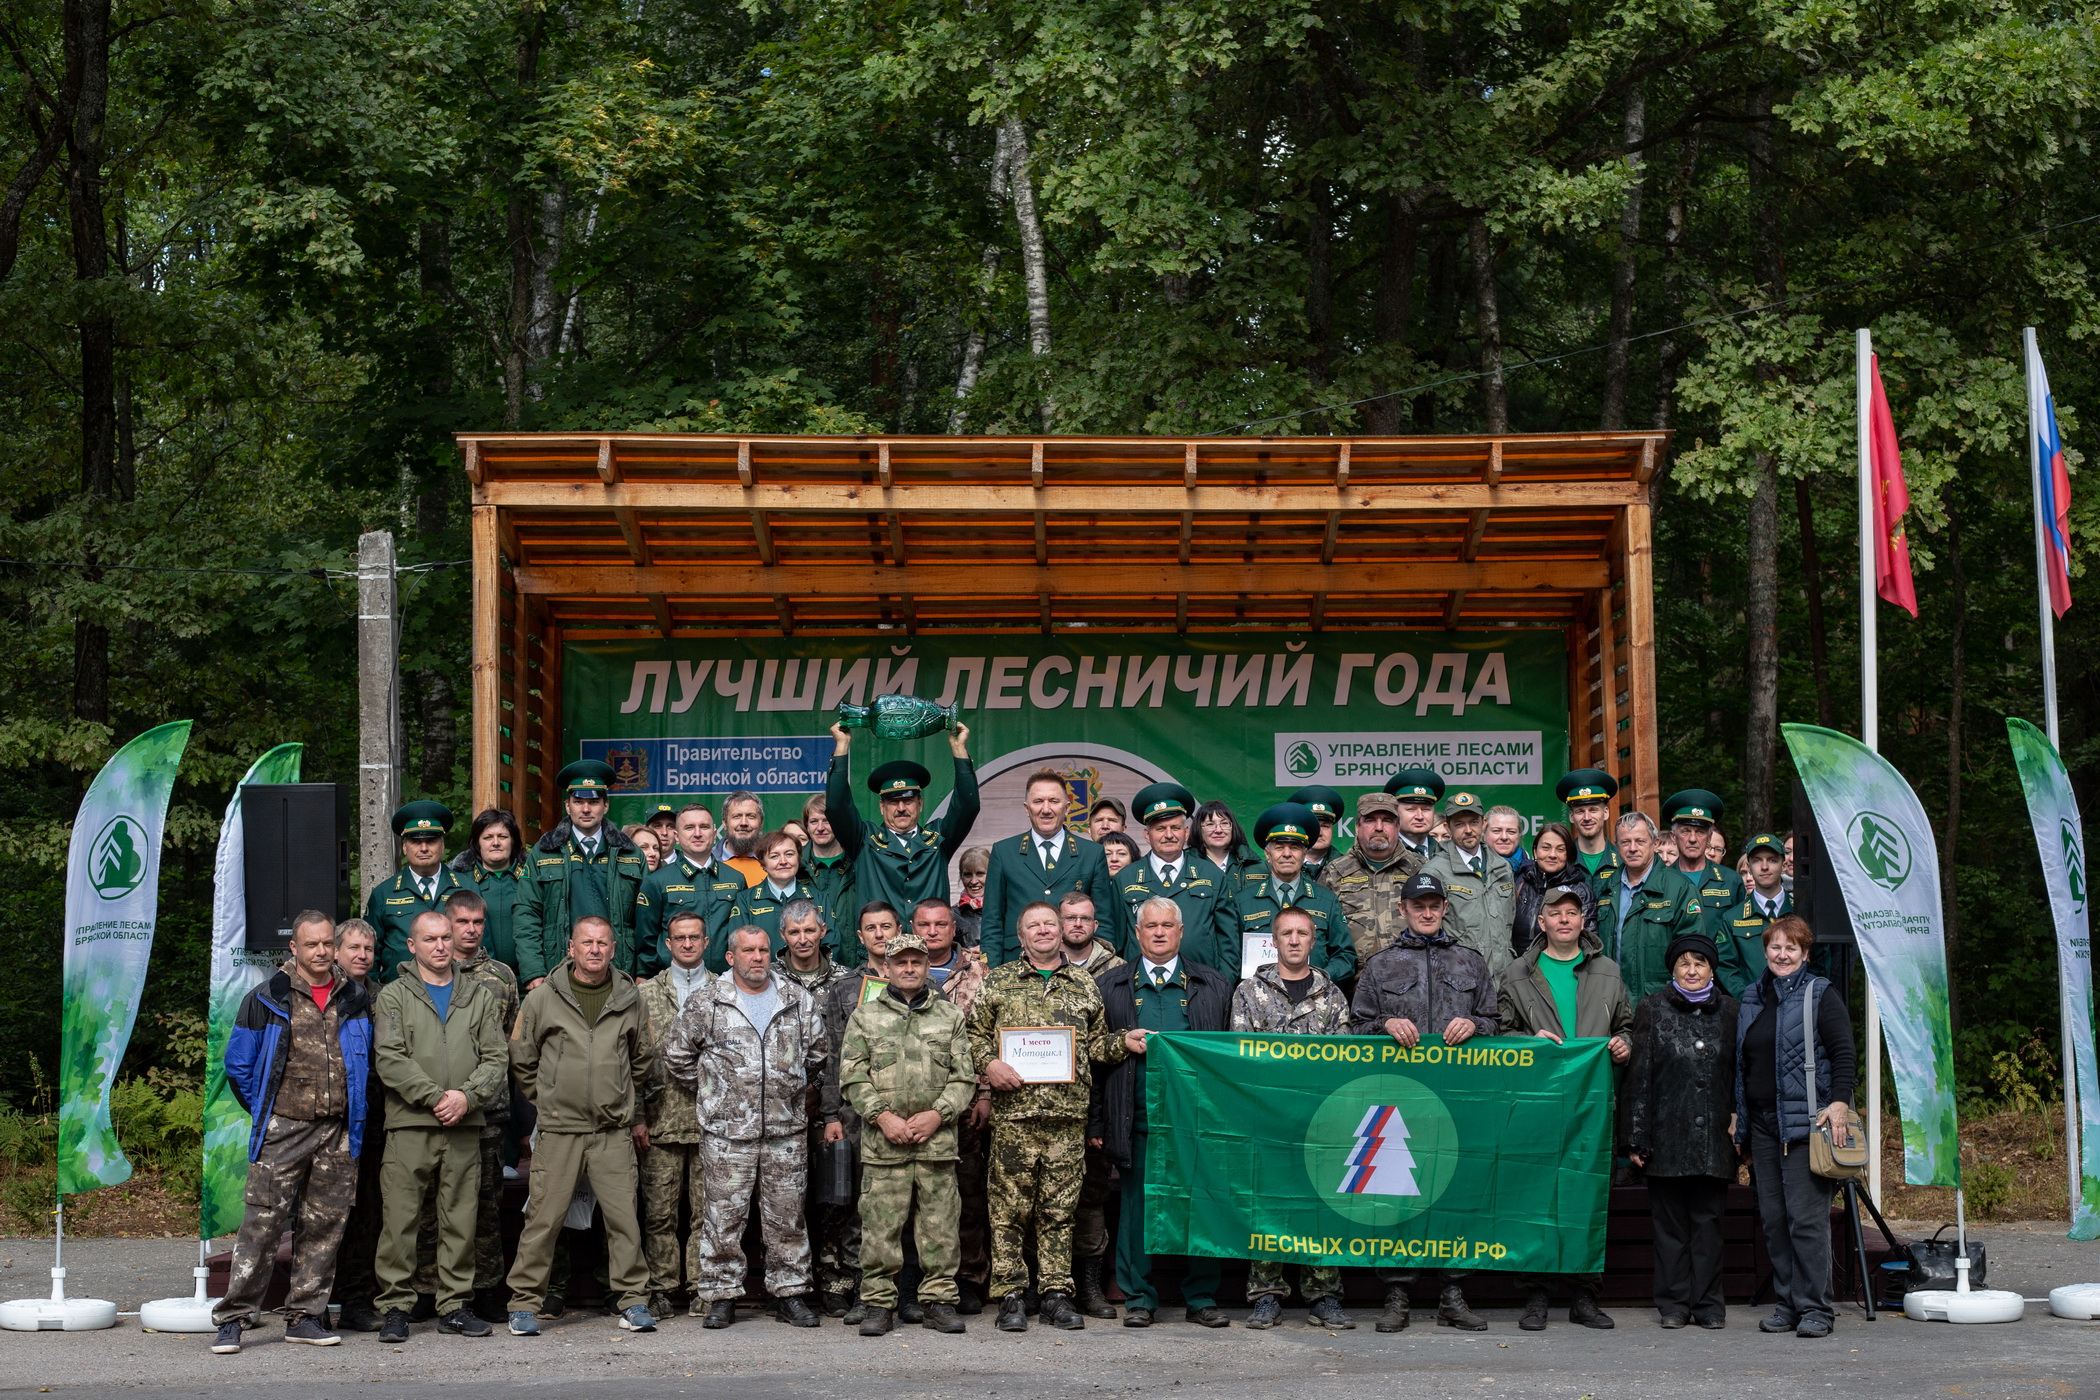 Конкурс на звание «Лучший лесничий года» состоялся в Брянской области